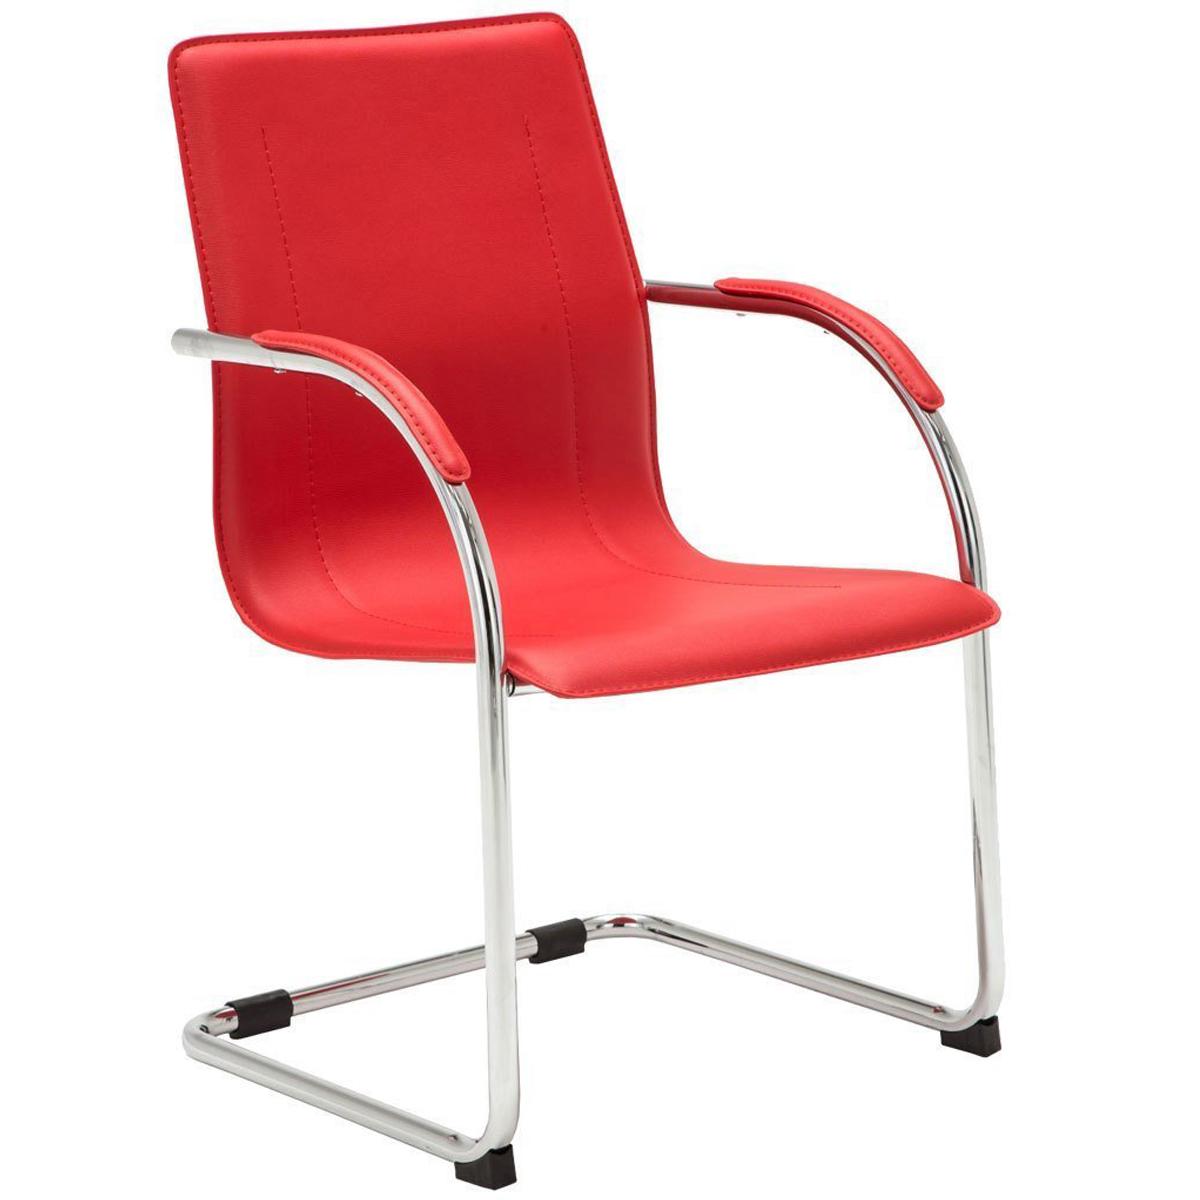 Cadeira de Visita FLAP, Estrutura Metálica, Design Moderno, Em Pele, Cor Vermelho